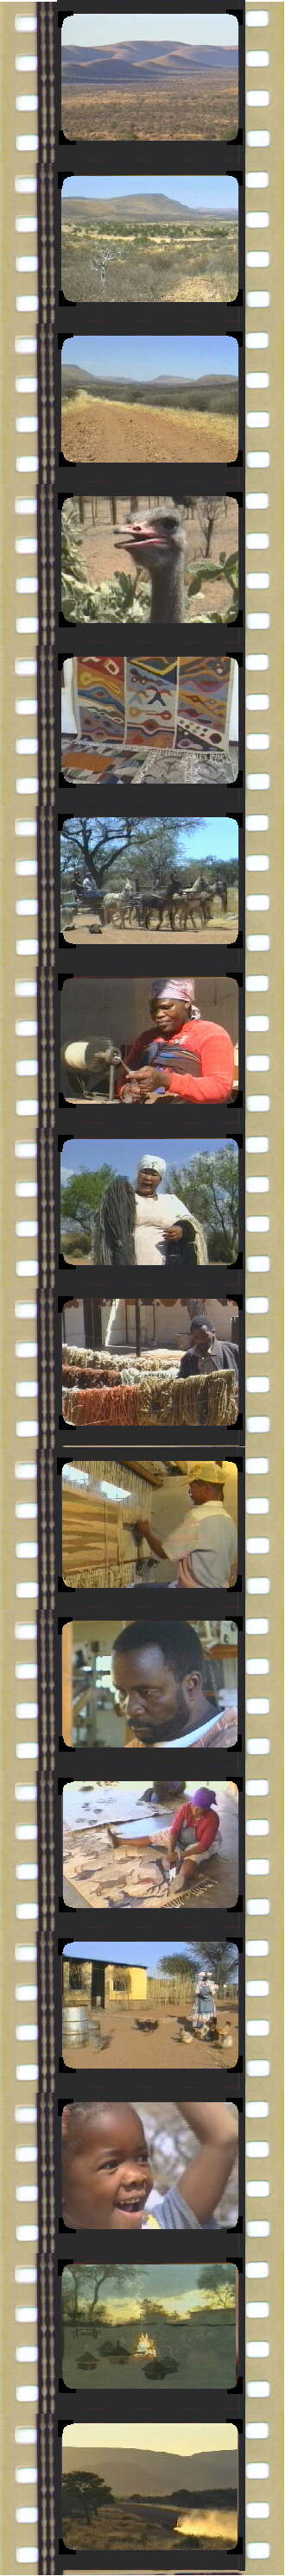 film-namibia